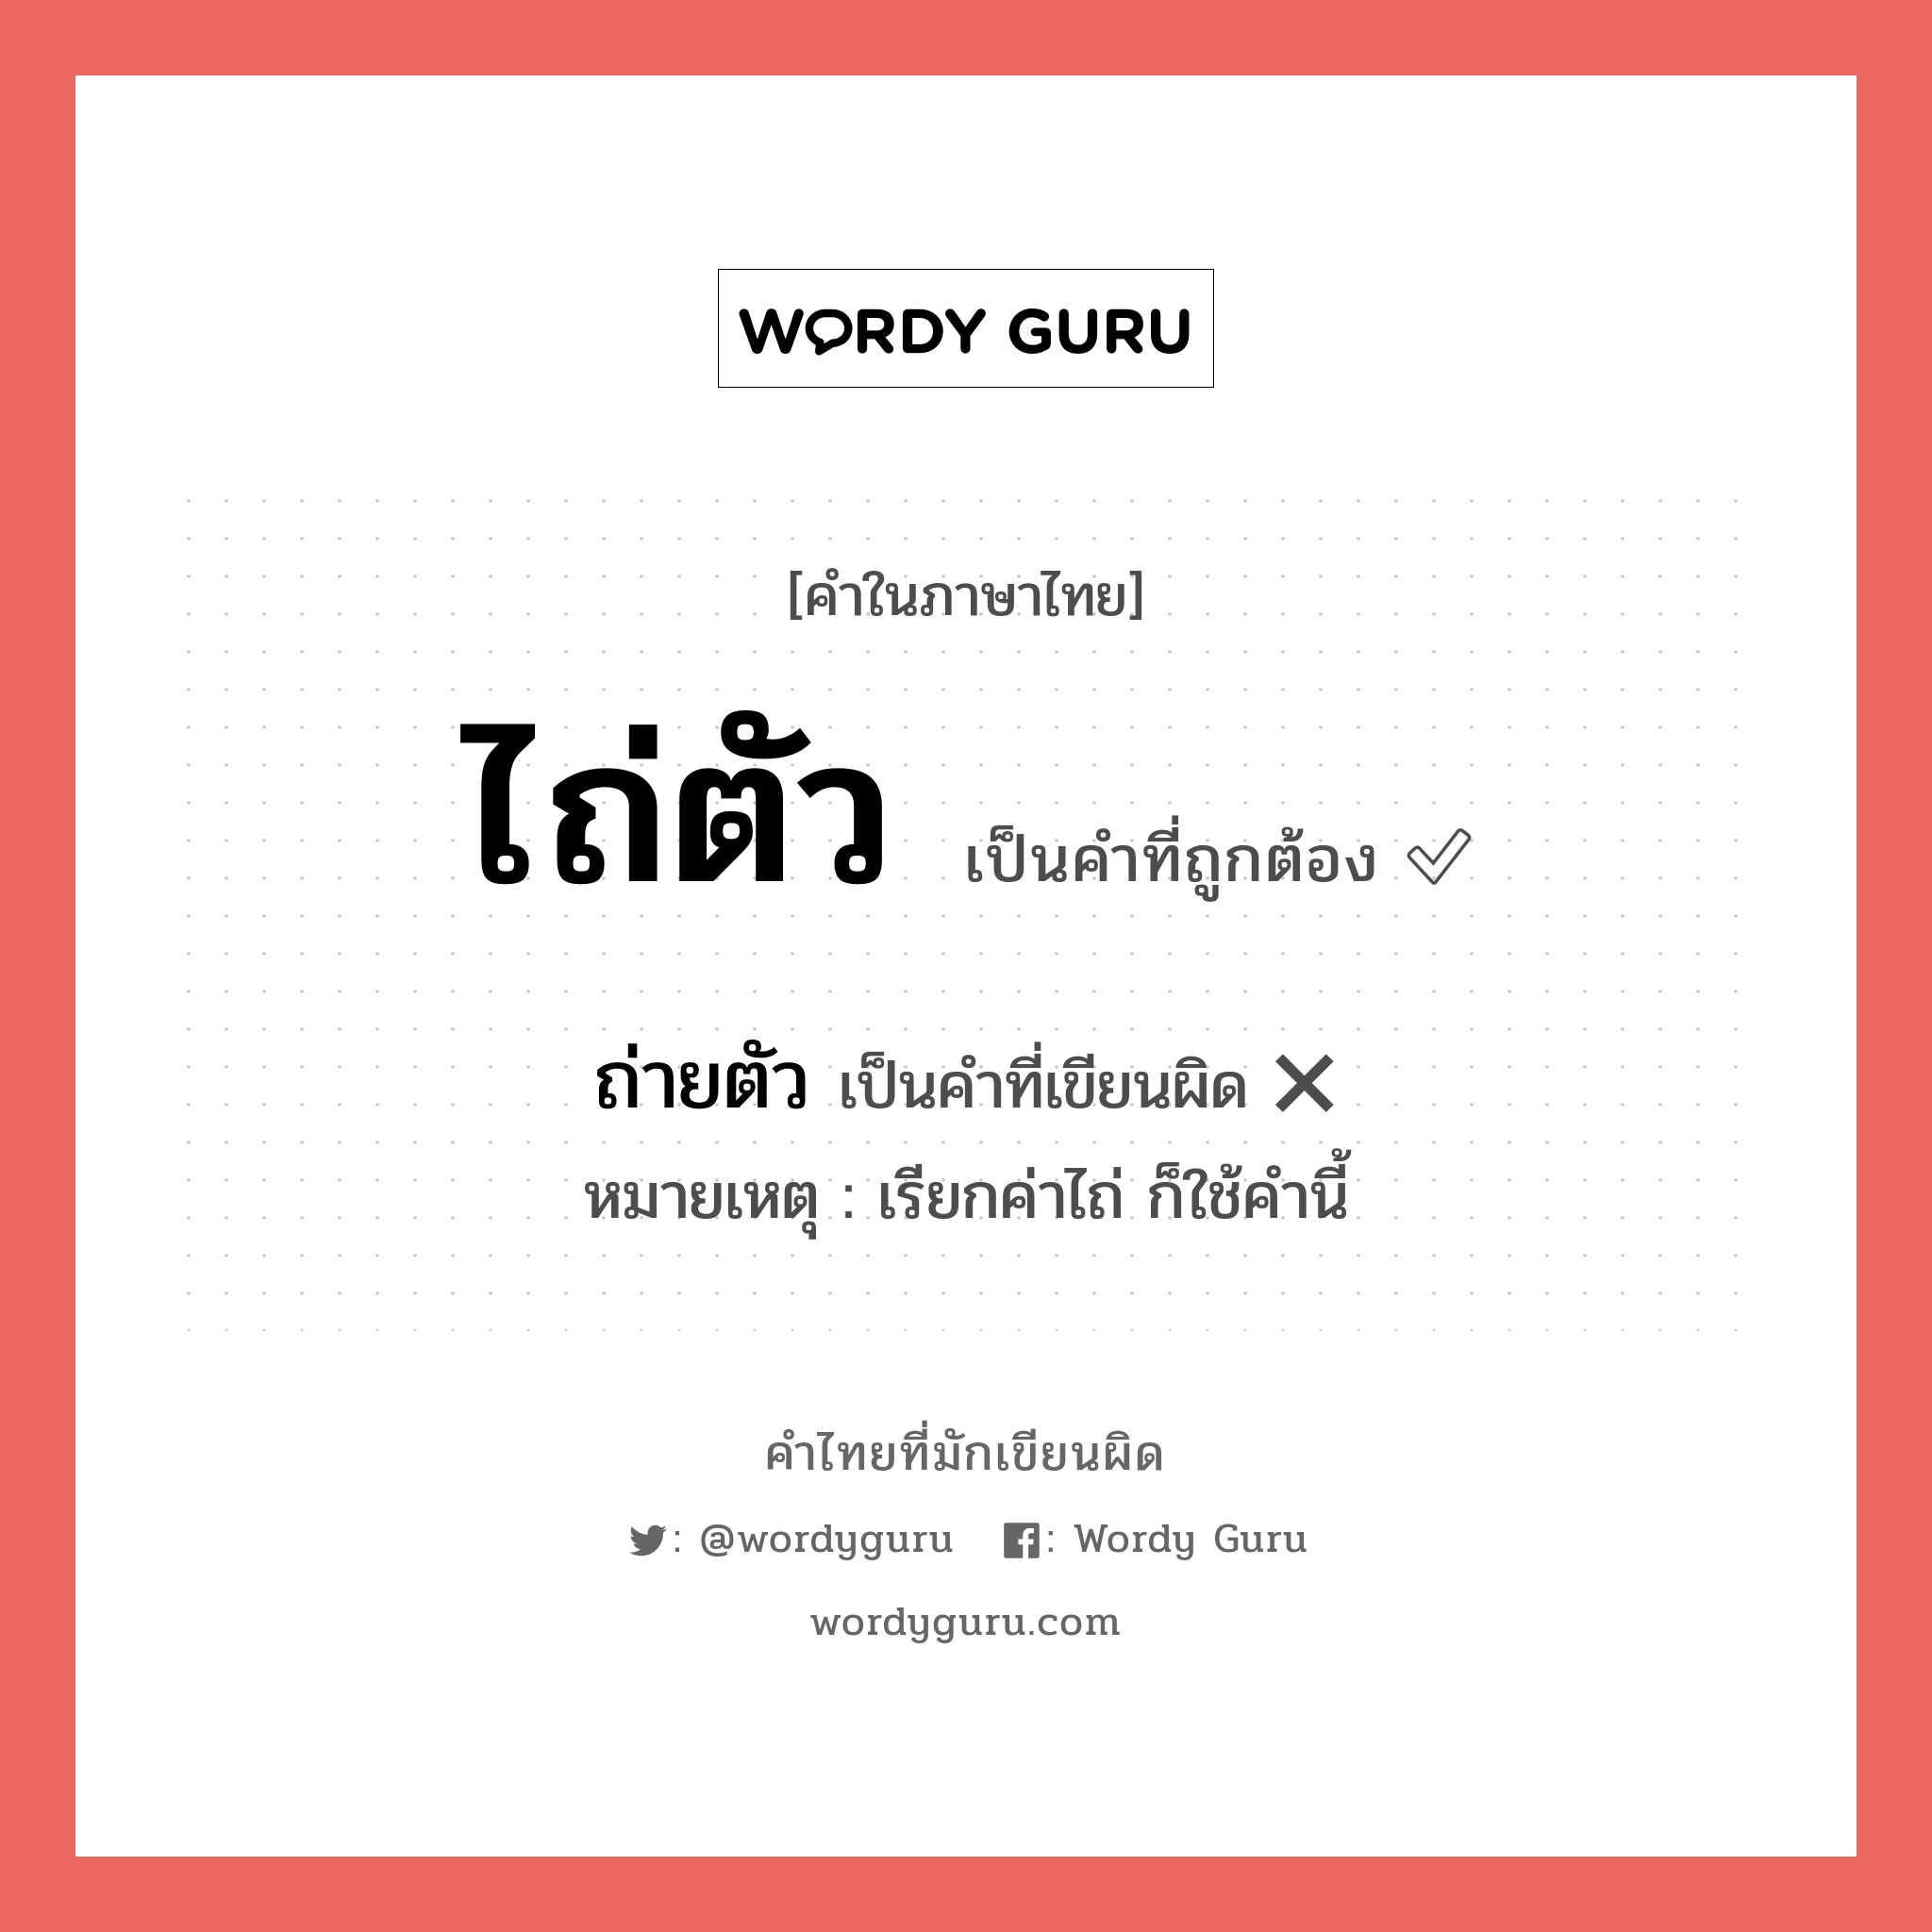 ถ่ายตัว หรือ ไถ่ตัว คำไหนเขียนถูก?, คำในภาษาไทยที่มักเขียนผิด ถ่ายตัว คำที่ผิด ❌ ไถ่ตัว หมายเหตุ เรียกค่าไถ่ ก็ใช้คำนี้